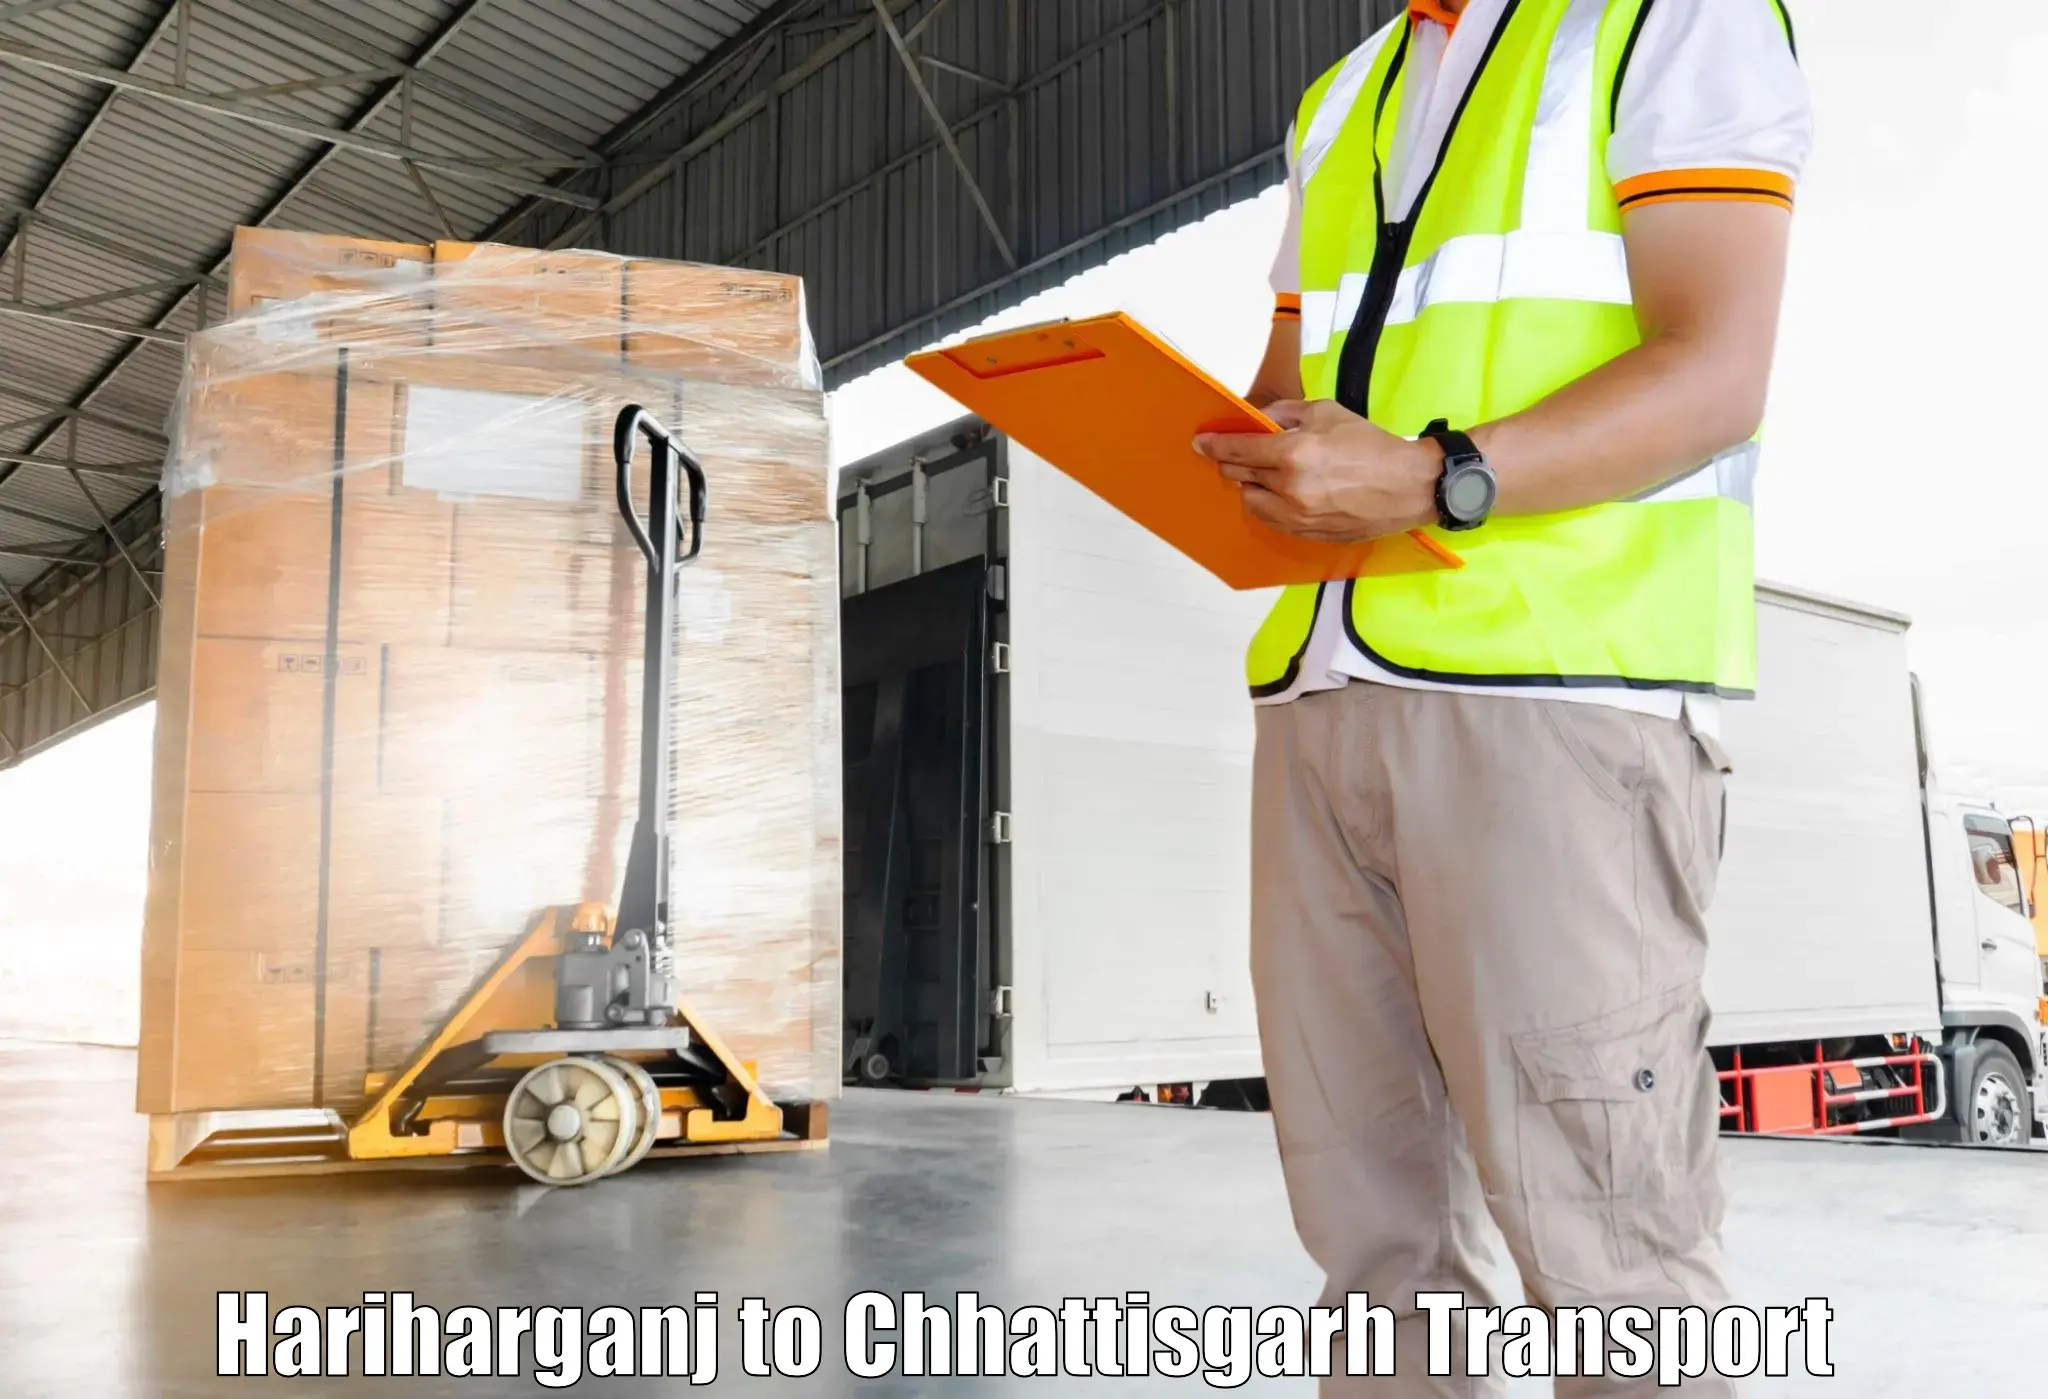 Furniture transport service Hariharganj to Kanker